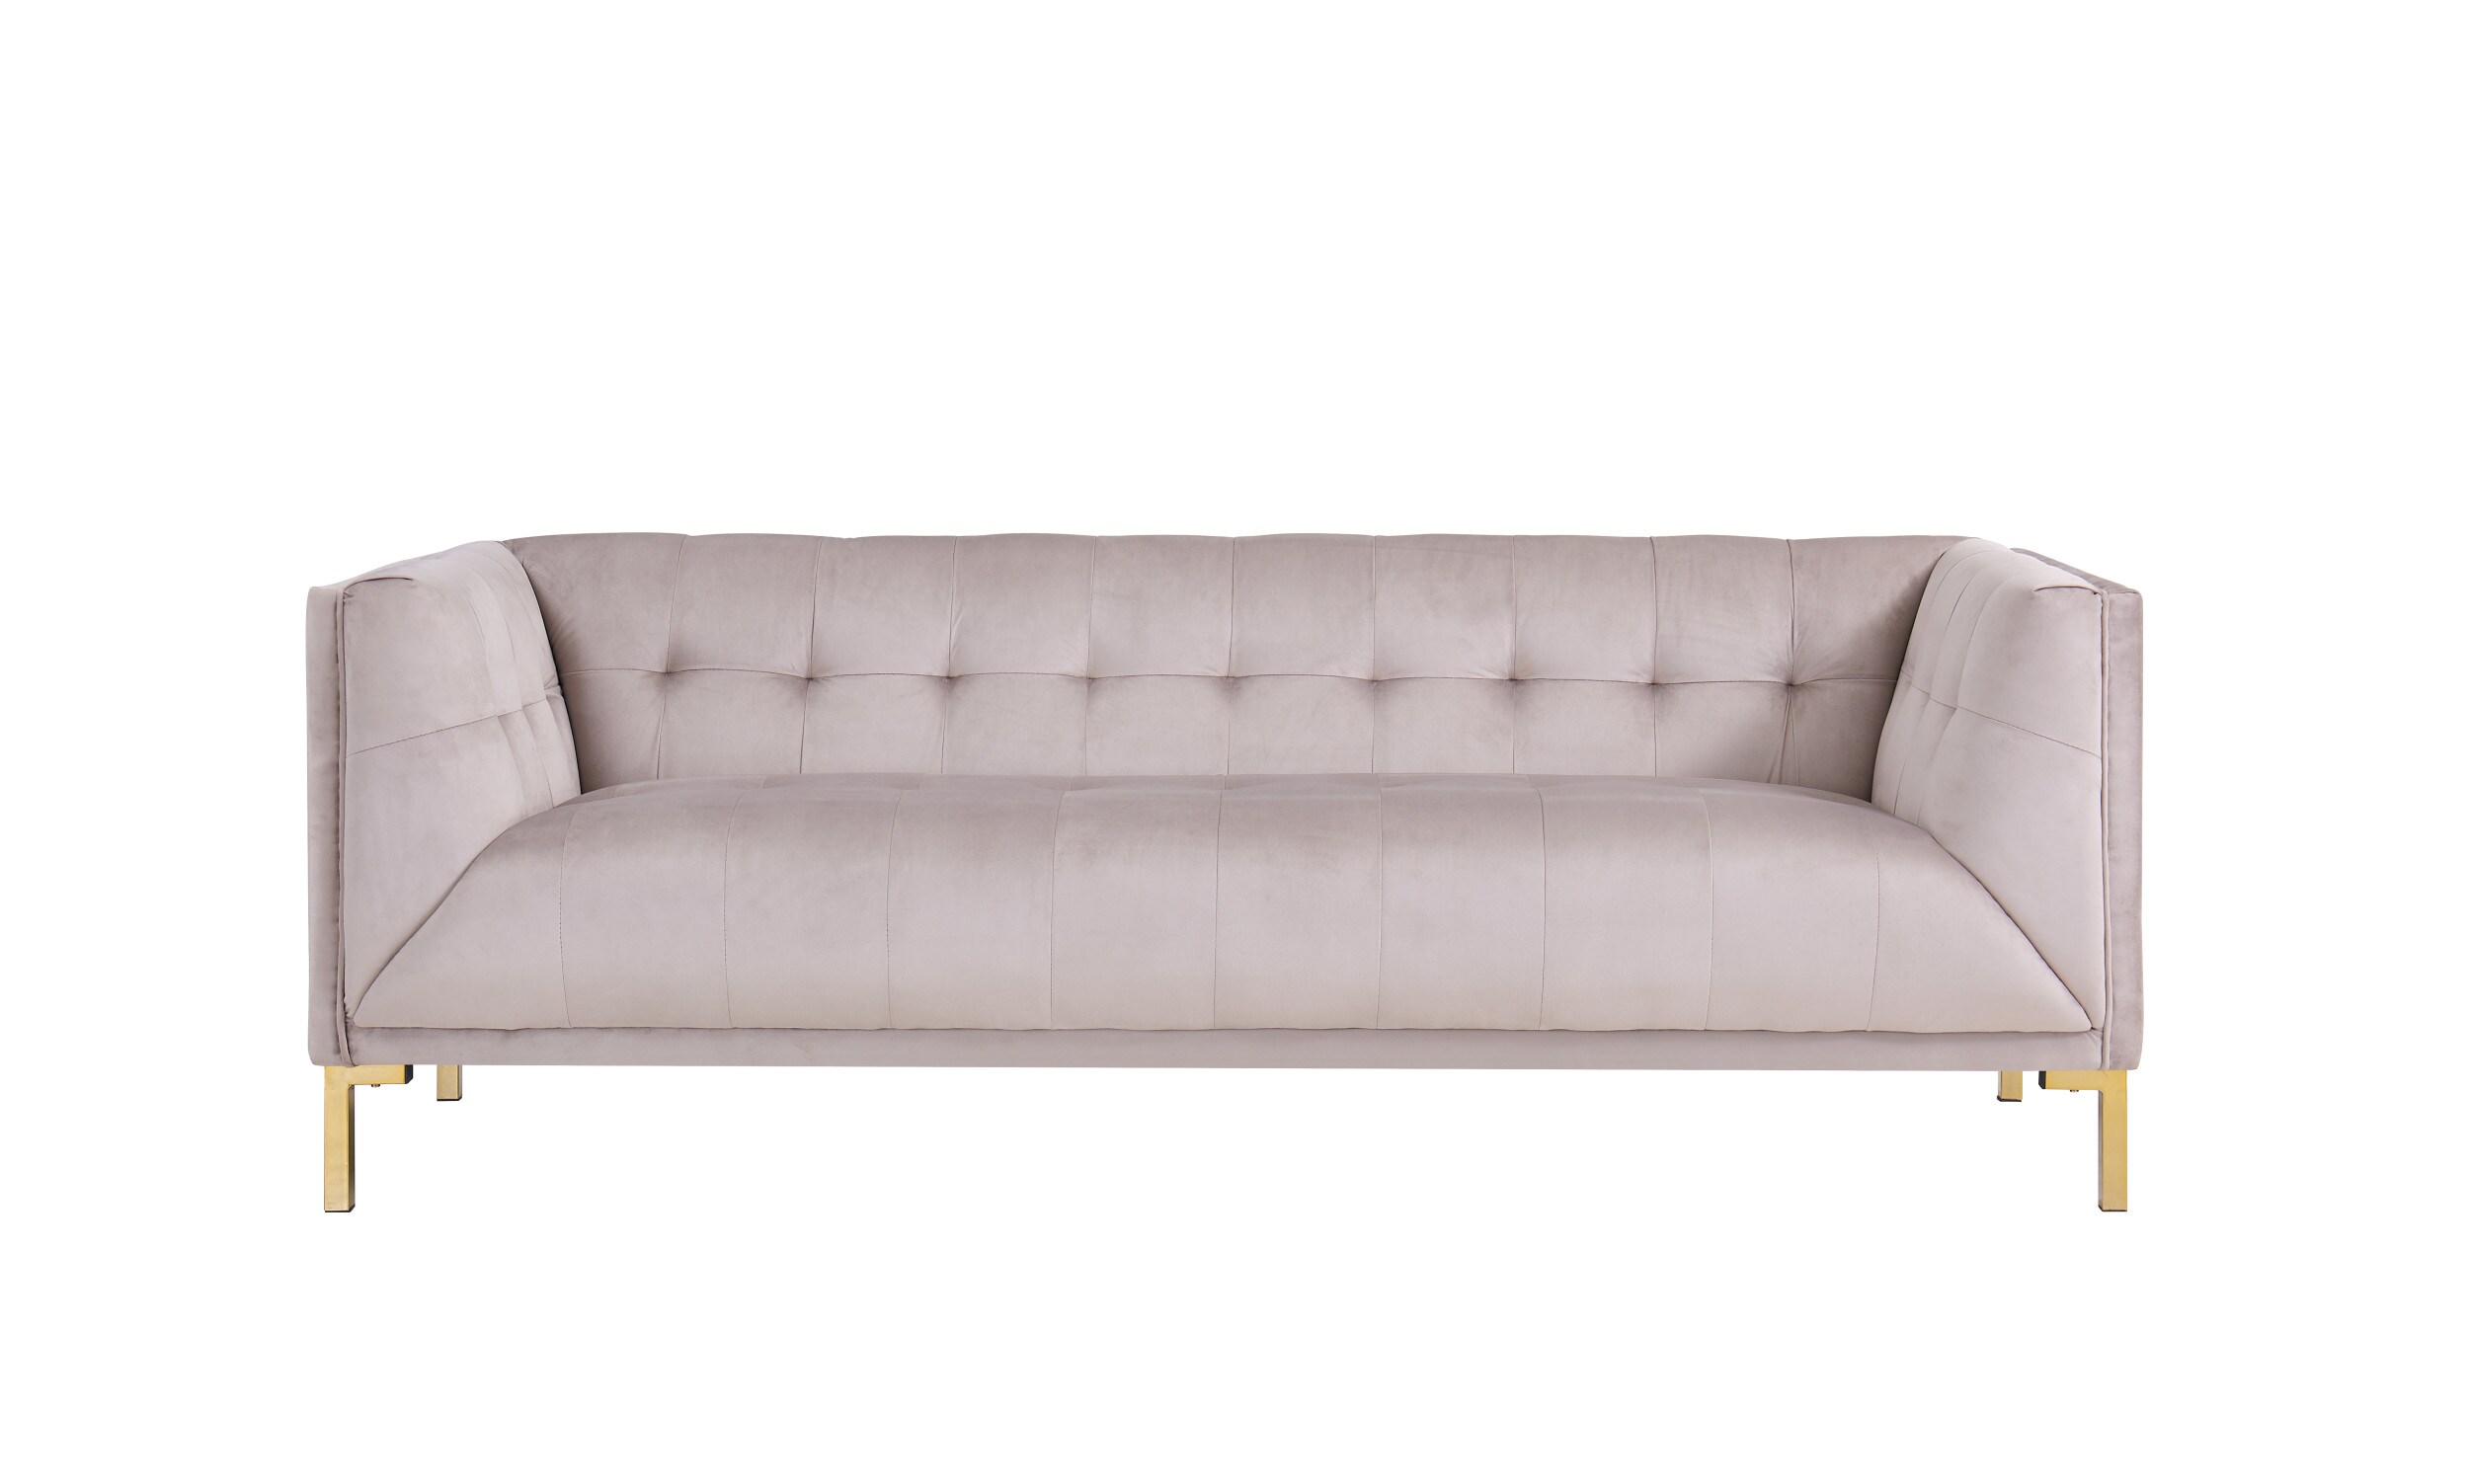 Azalea Velvet 3 Seater Sofa In Baby Pink Colour